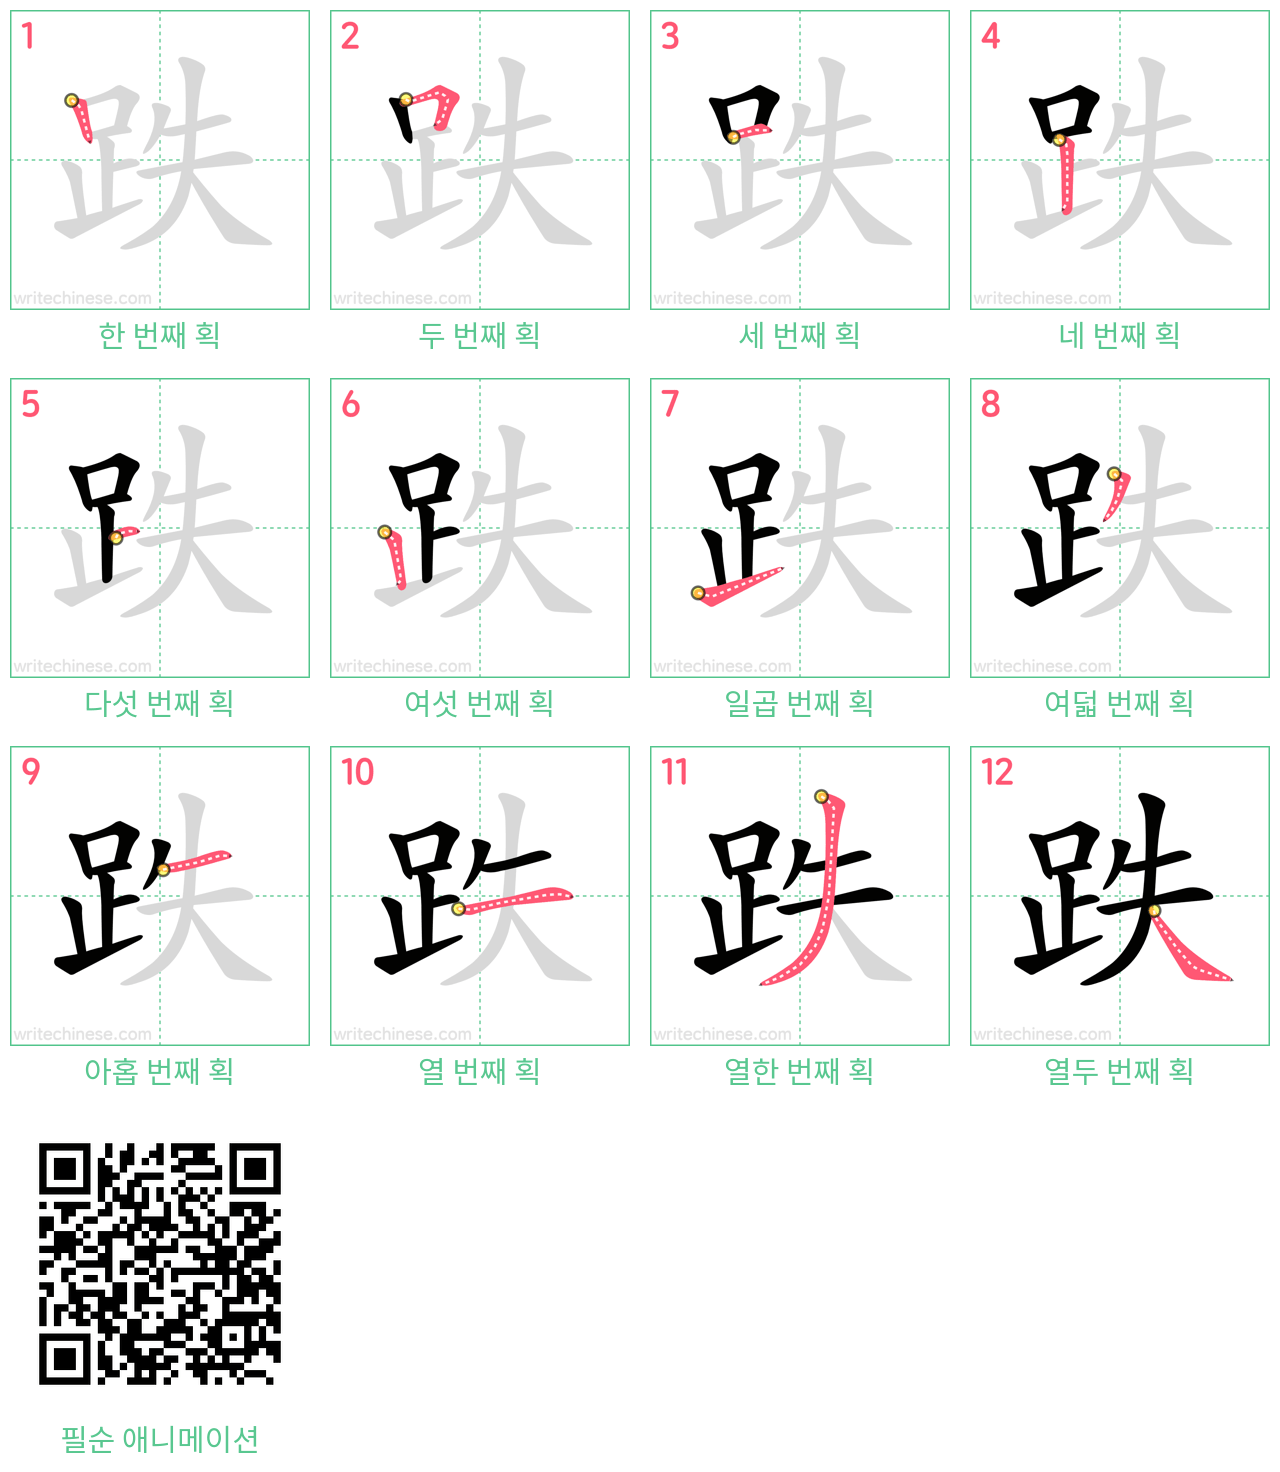 跌 step-by-step stroke order diagrams